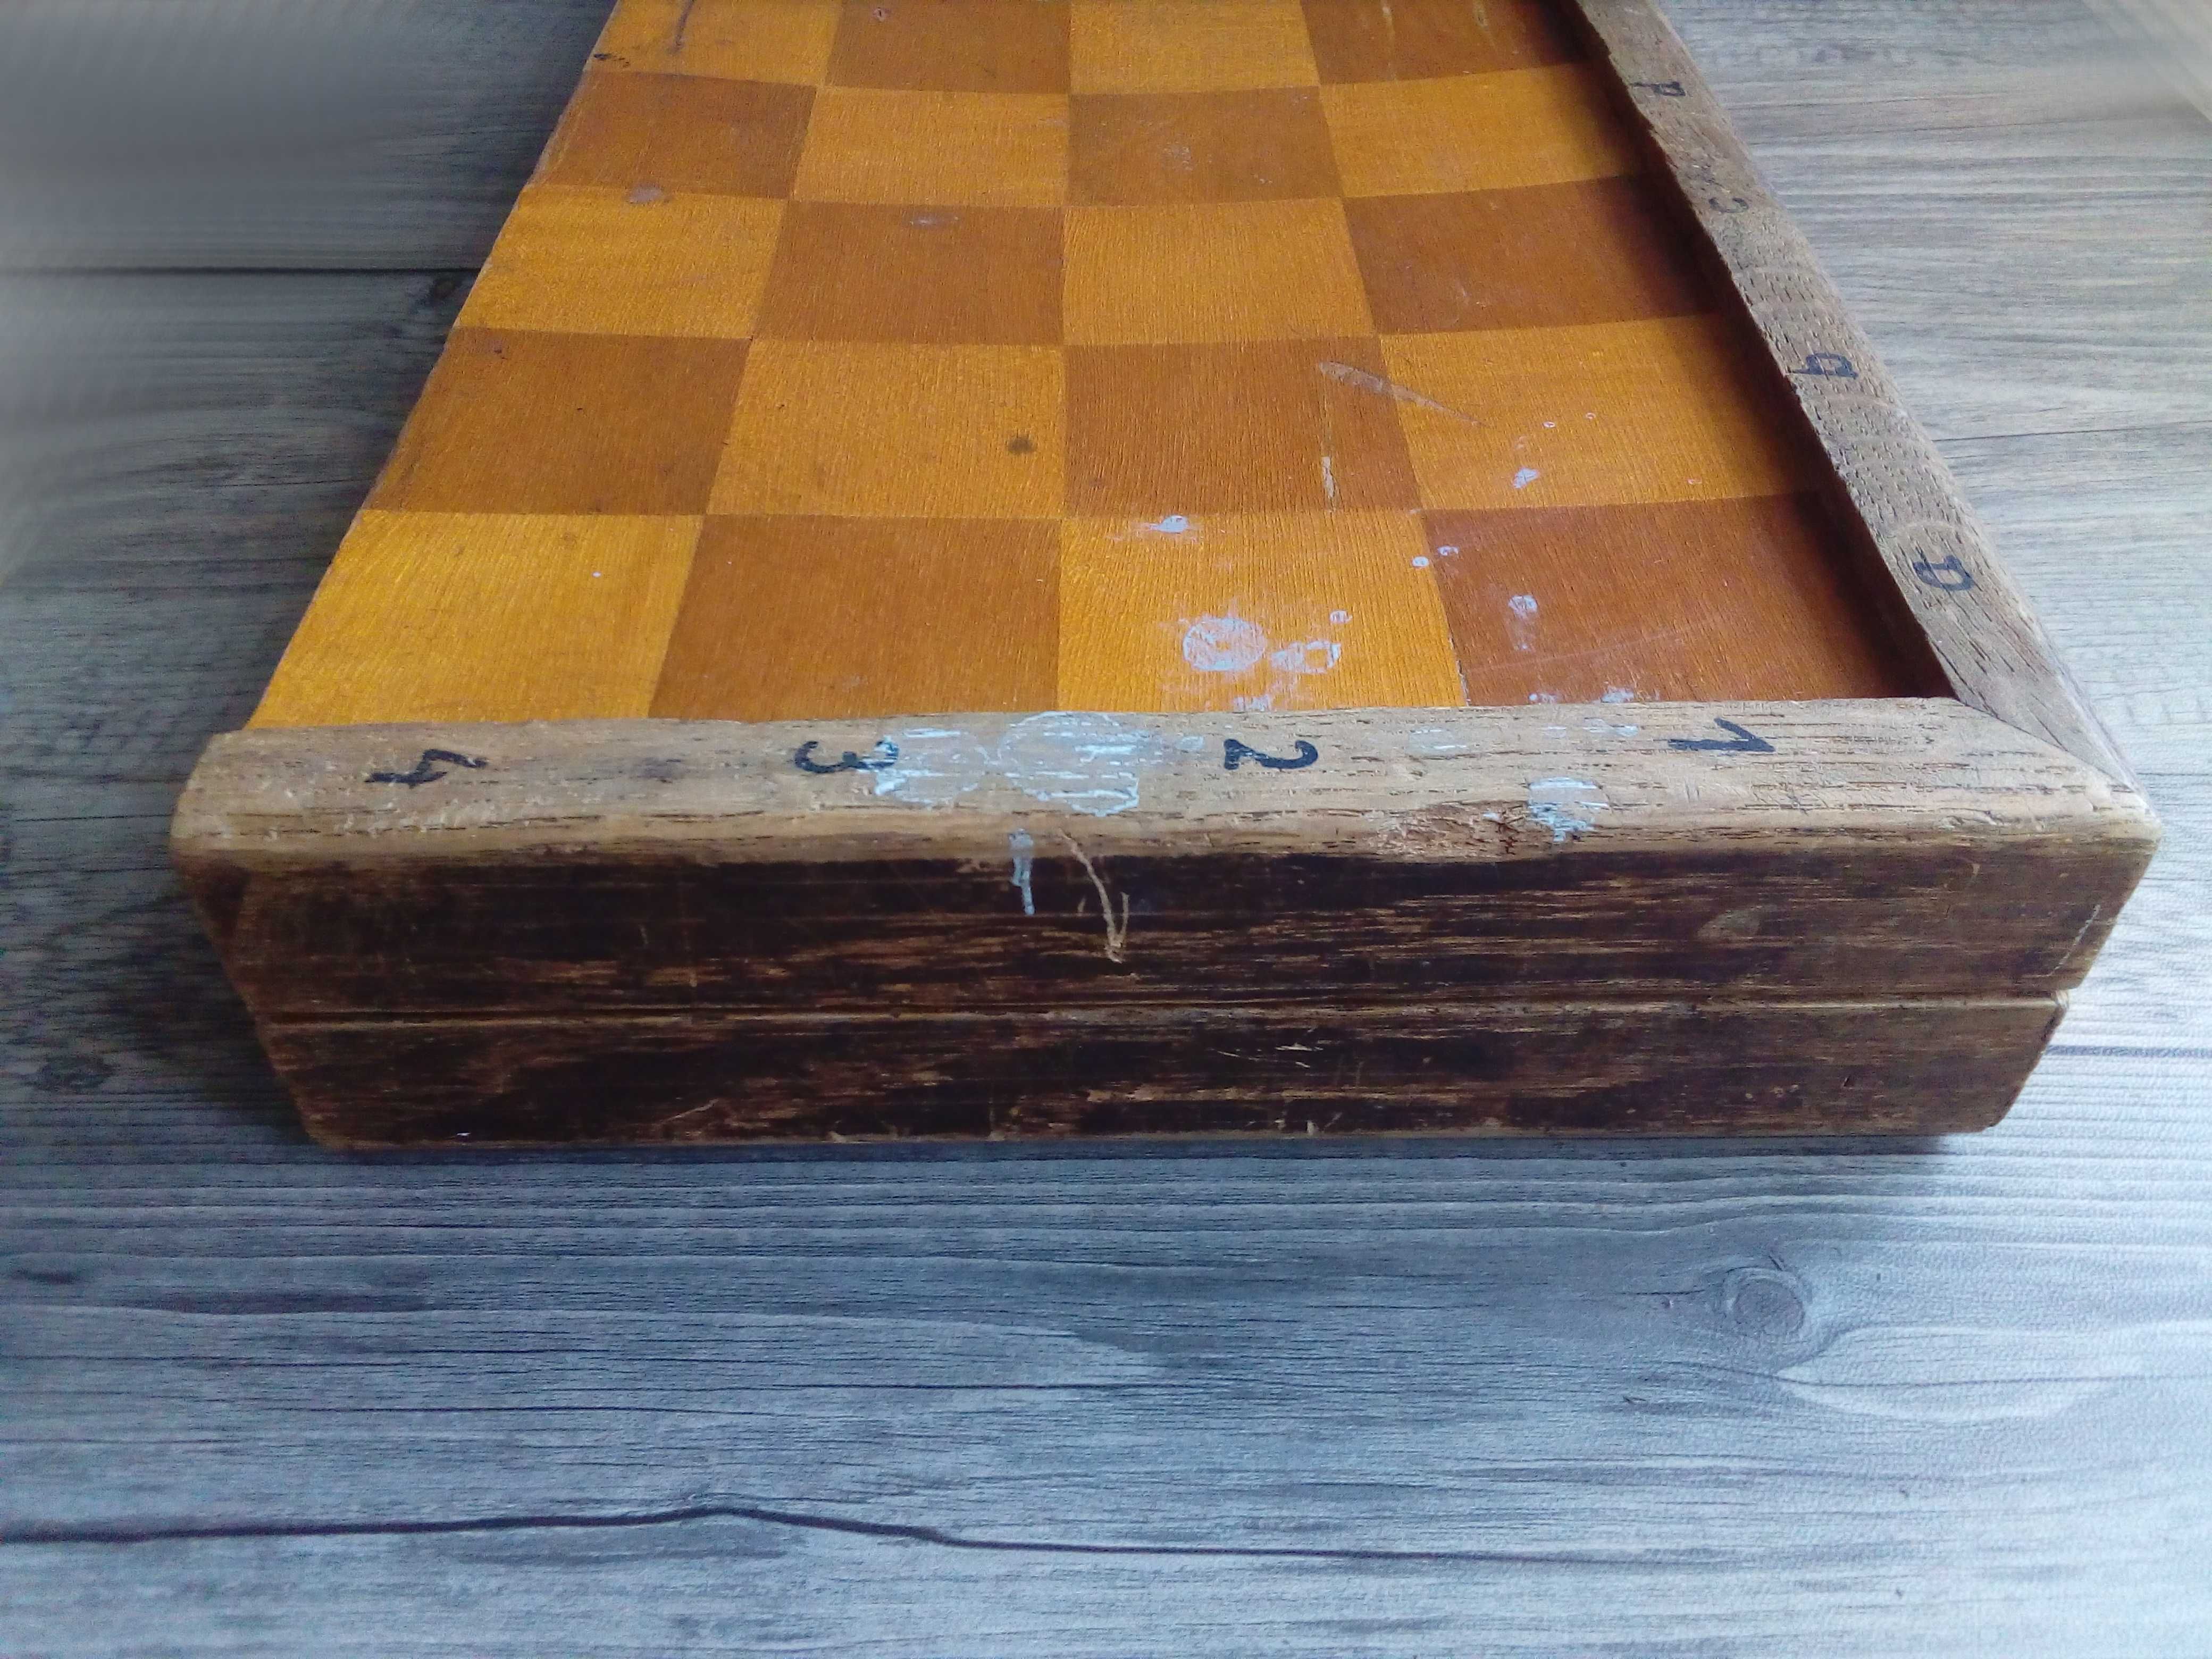 szachy szachownica drewniana 159zł zamiast 199zł